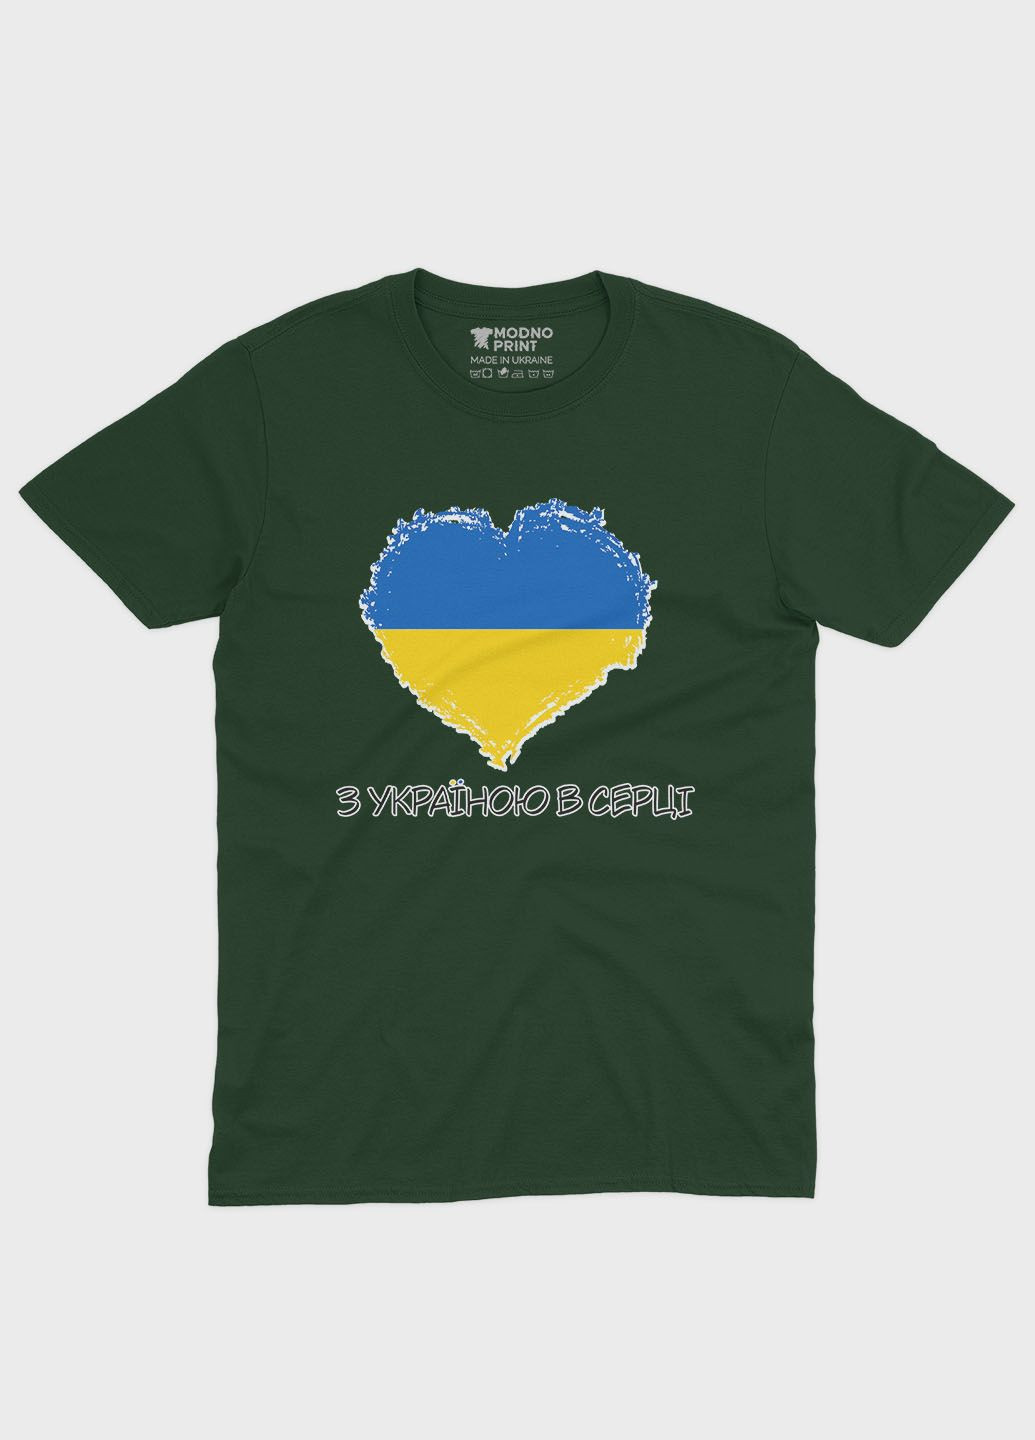 Темно-зеленая мужская футболка с патриотическим принтом с украиной в сердце (ts001-2-bog-005-1-053) Modno